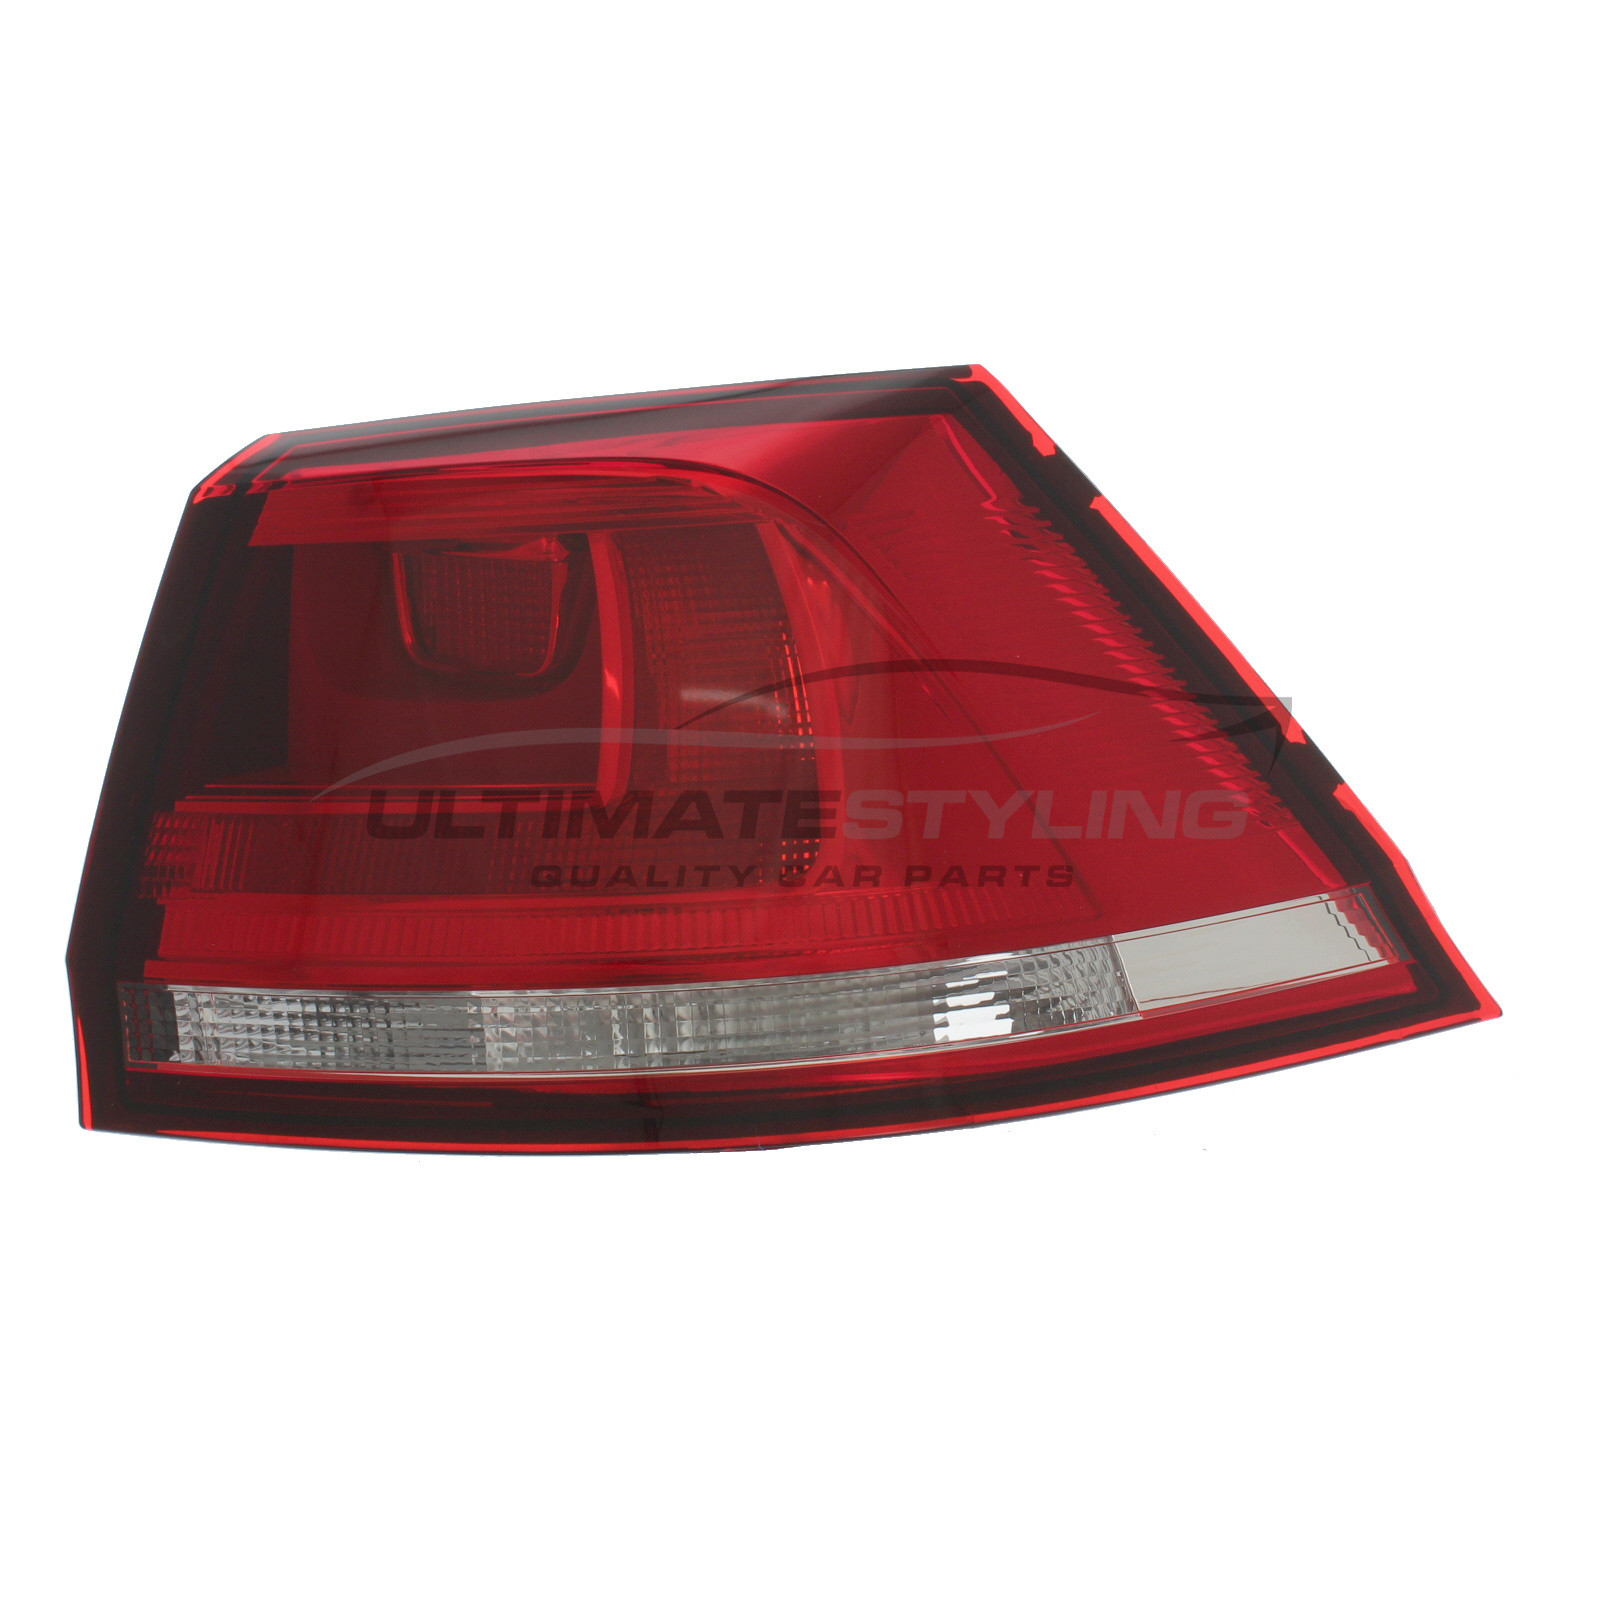 Rear Light / Tail Light for VW Golf